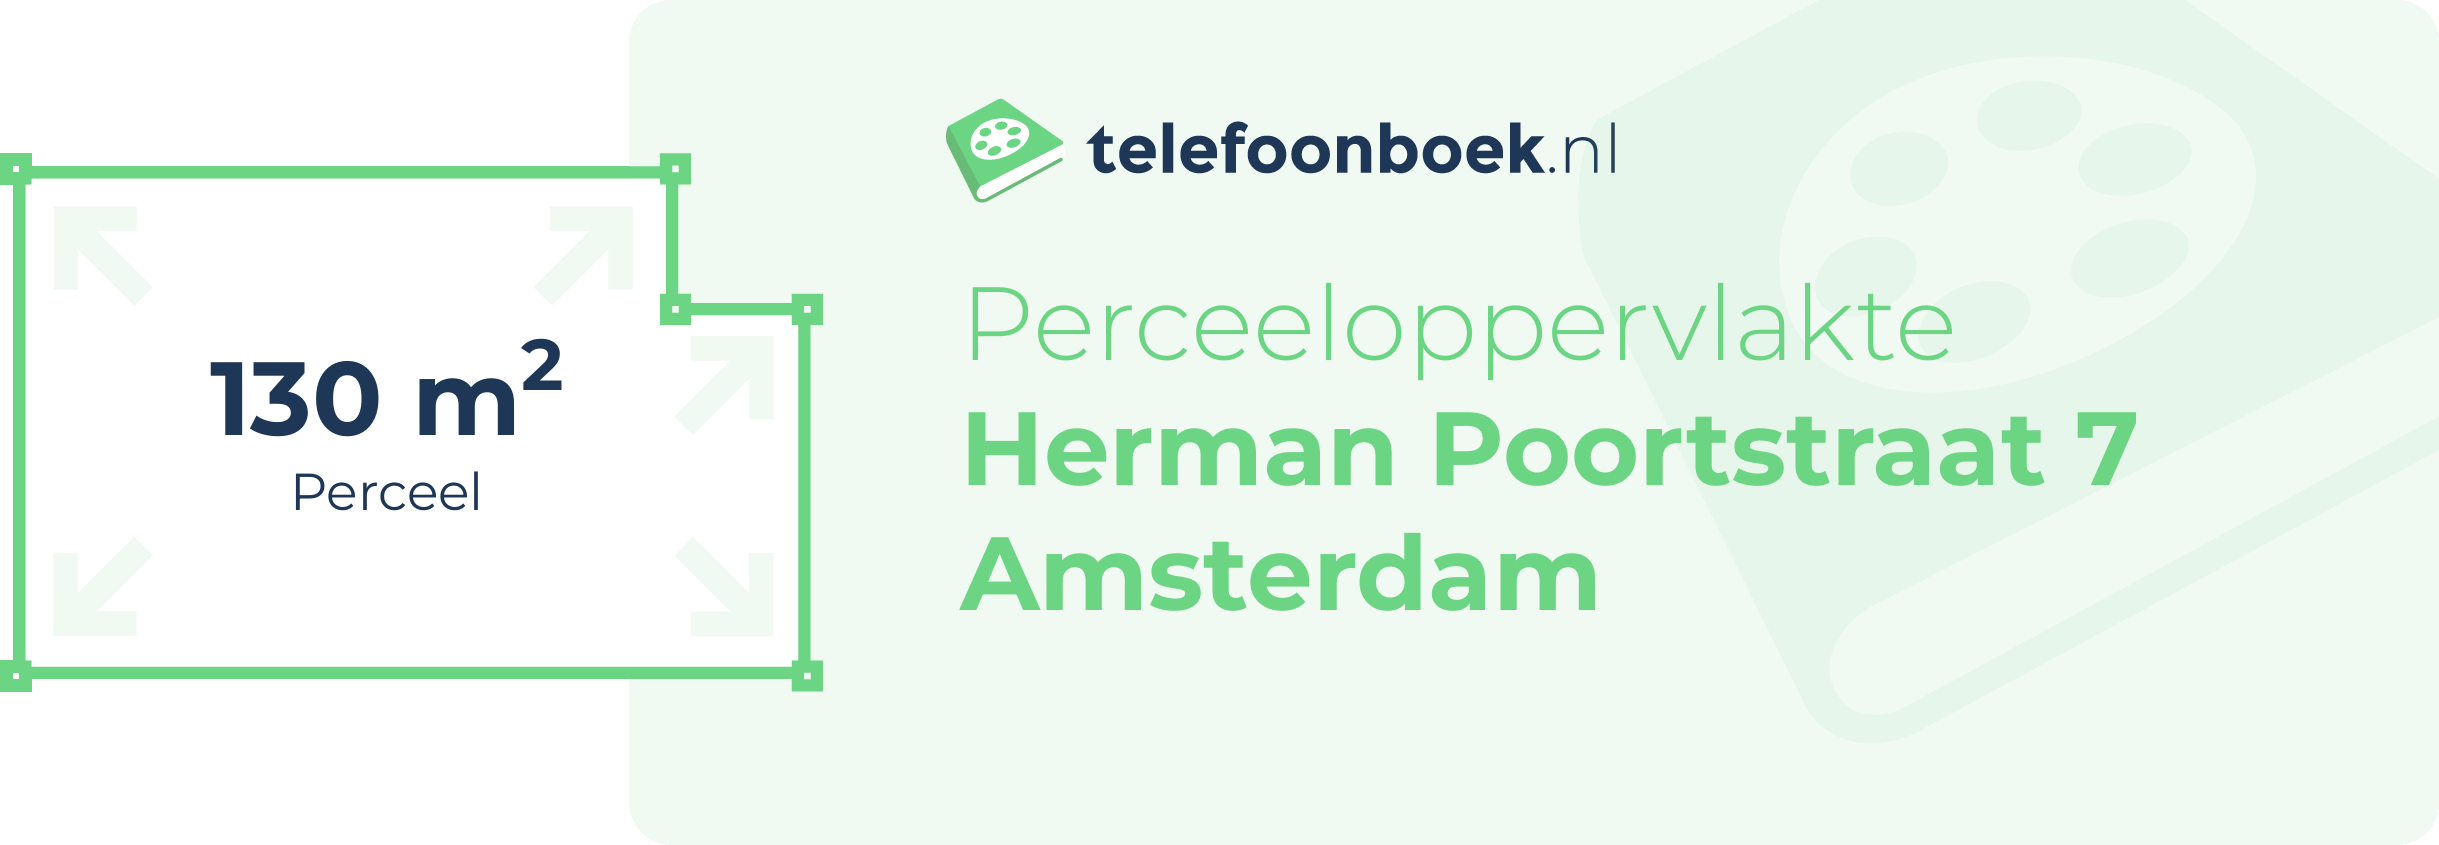 Perceeloppervlakte Herman Poortstraat 7 Amsterdam